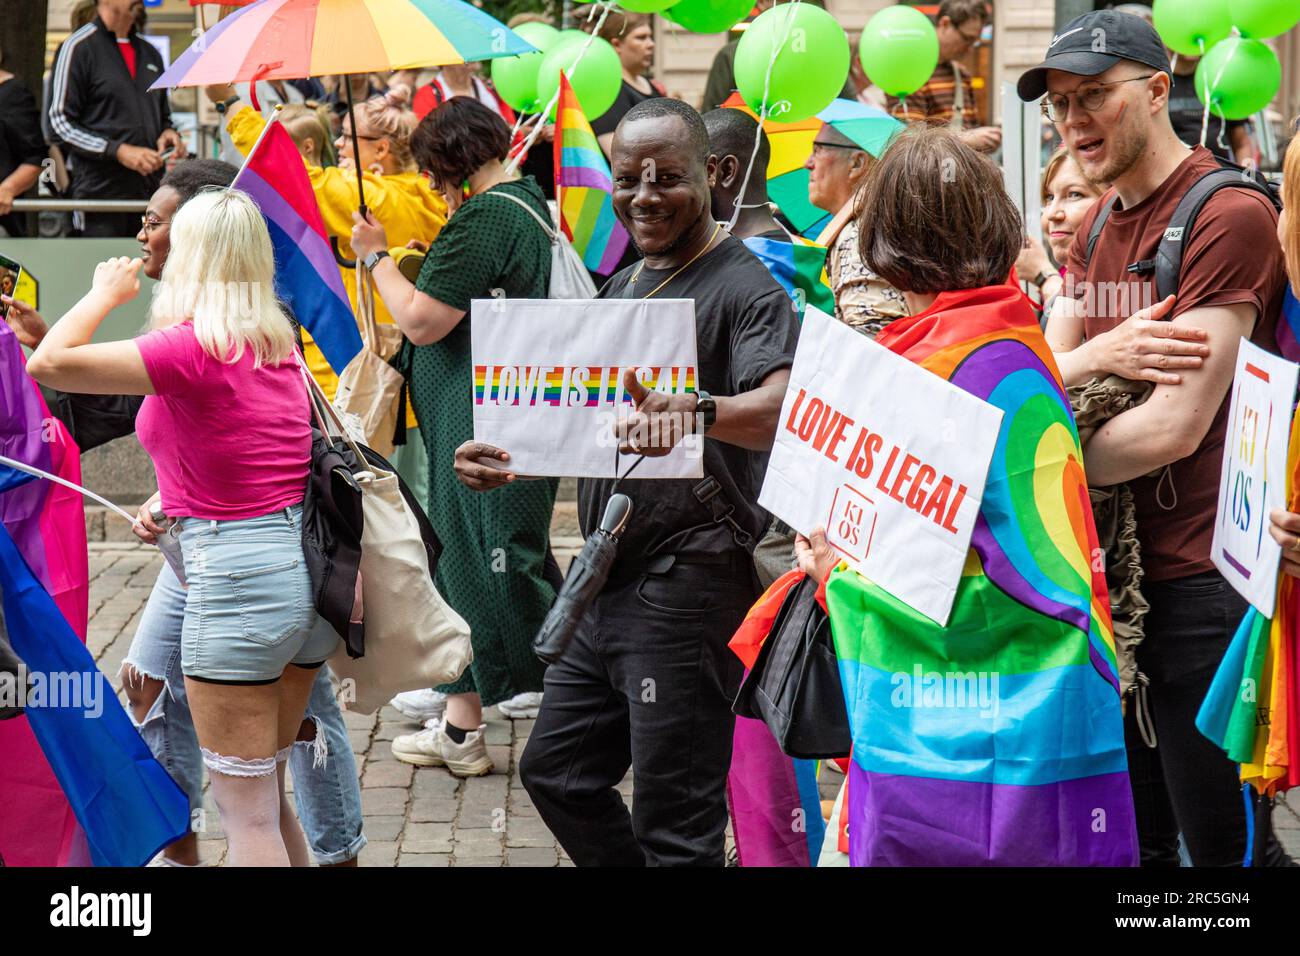 Liebe ist legal. Personen mit gedruckten Schildern mit KIOS-Logo auf der Helsinki Pride 2023 Parade in Helsinki, Finnland. Stockfoto